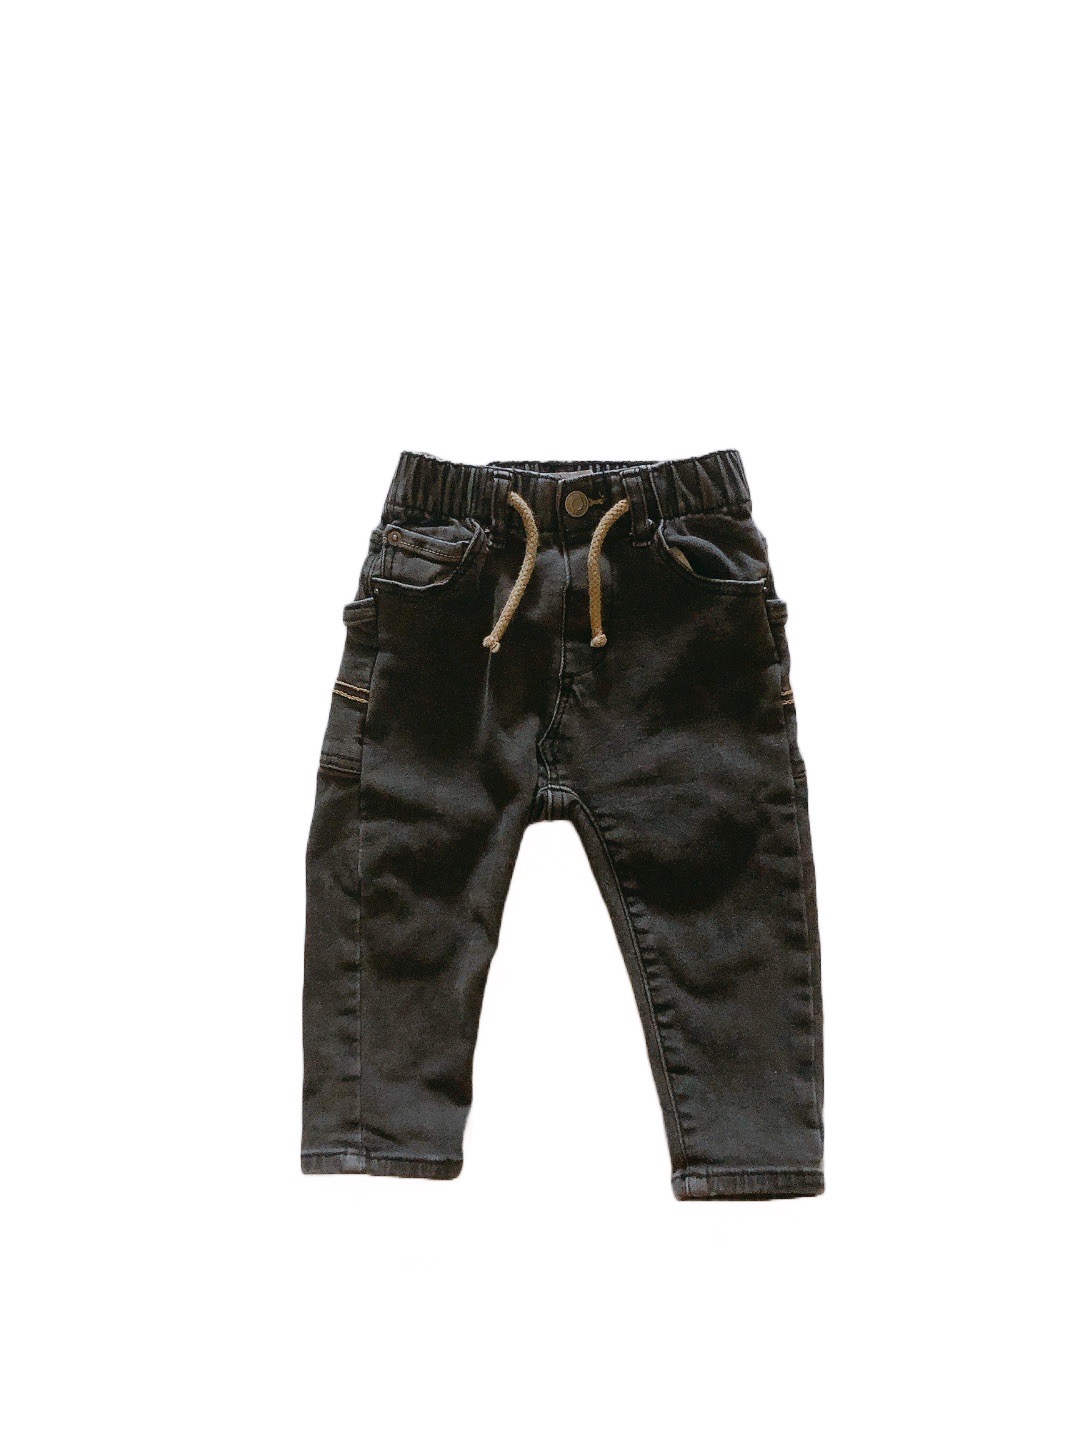 《Zara baby》黑色兒童牛仔褲(80cm)
NT$199